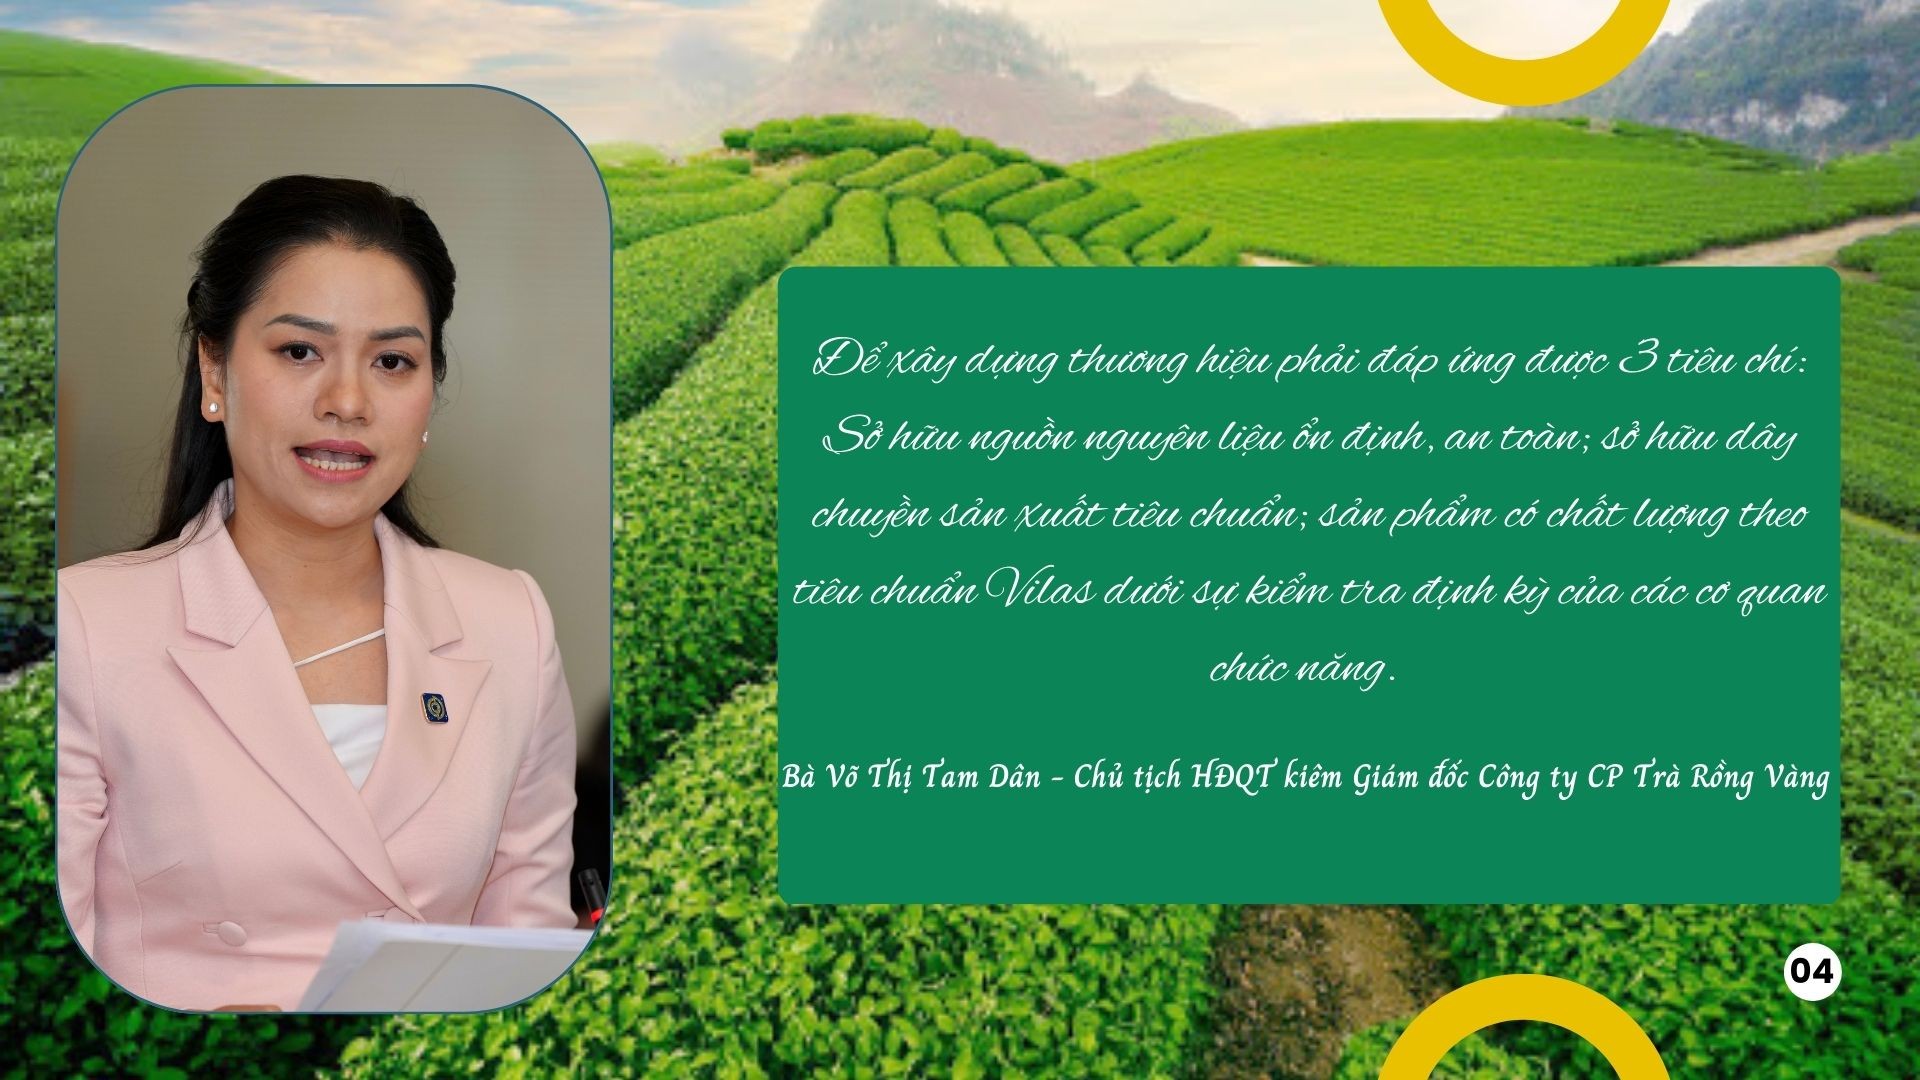 “Bí kíp” xây dựng thương hiệu thành công cho nông sản Việt